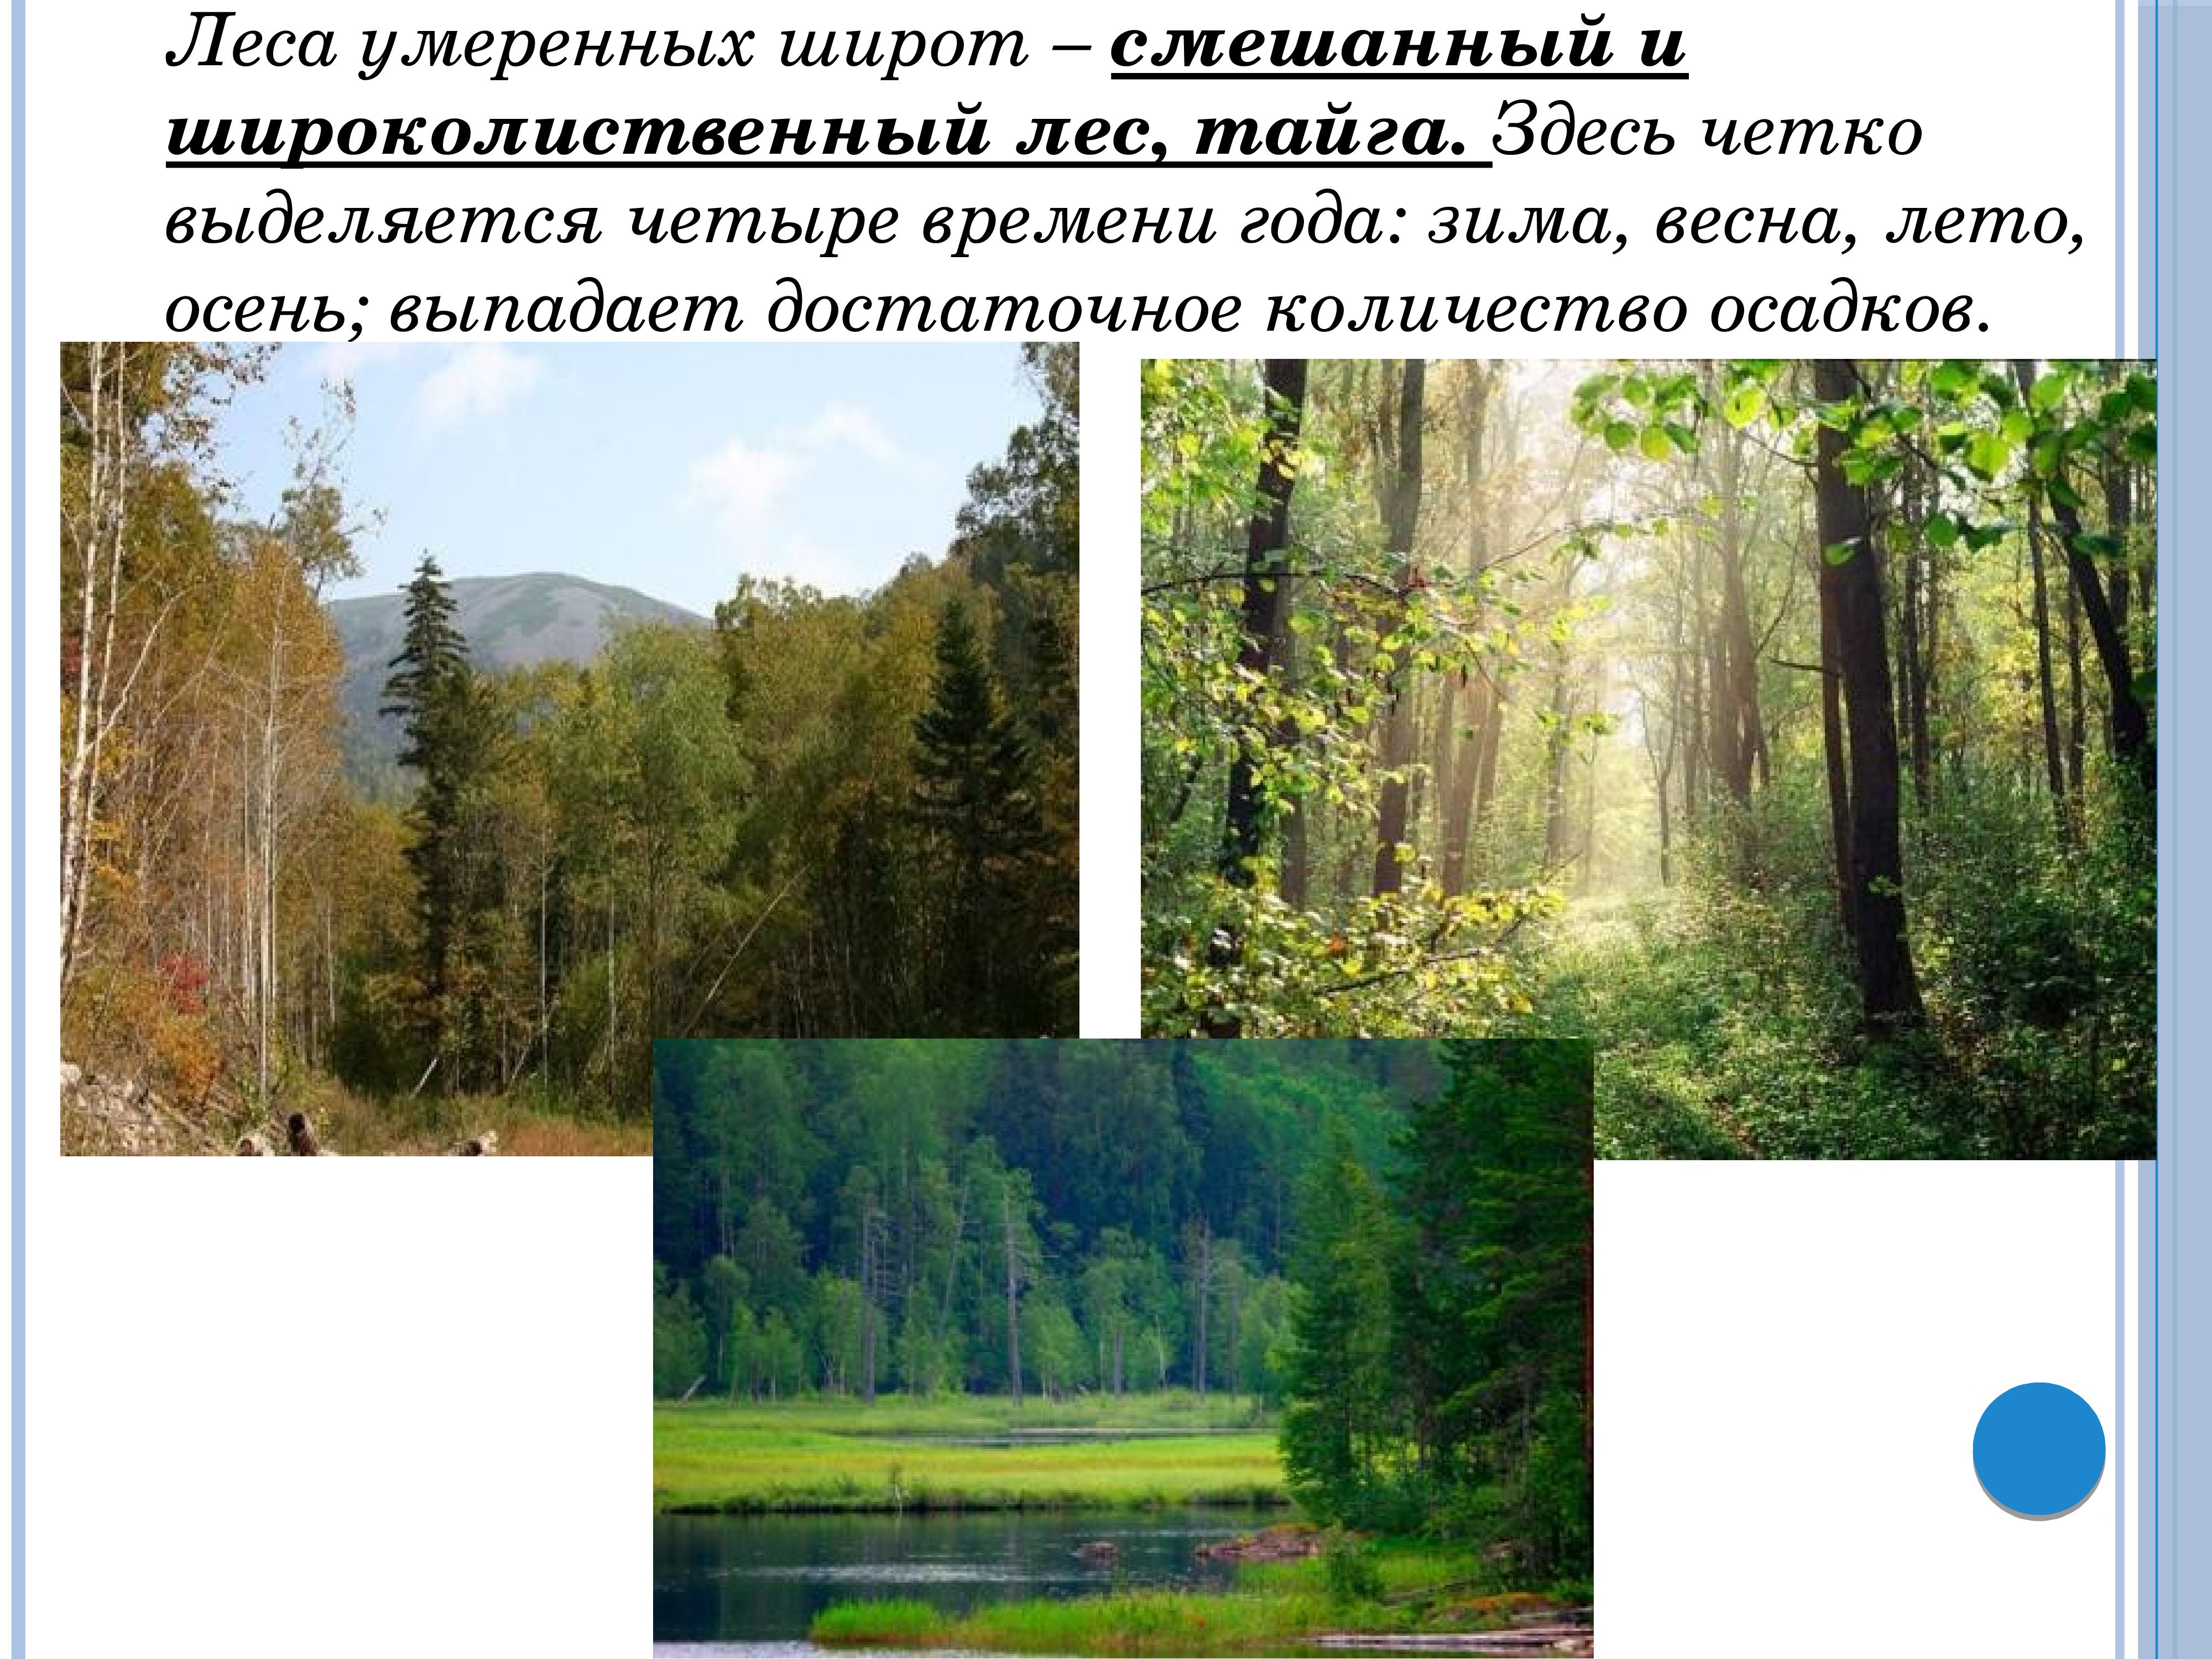 Природные районы смешанных лесов